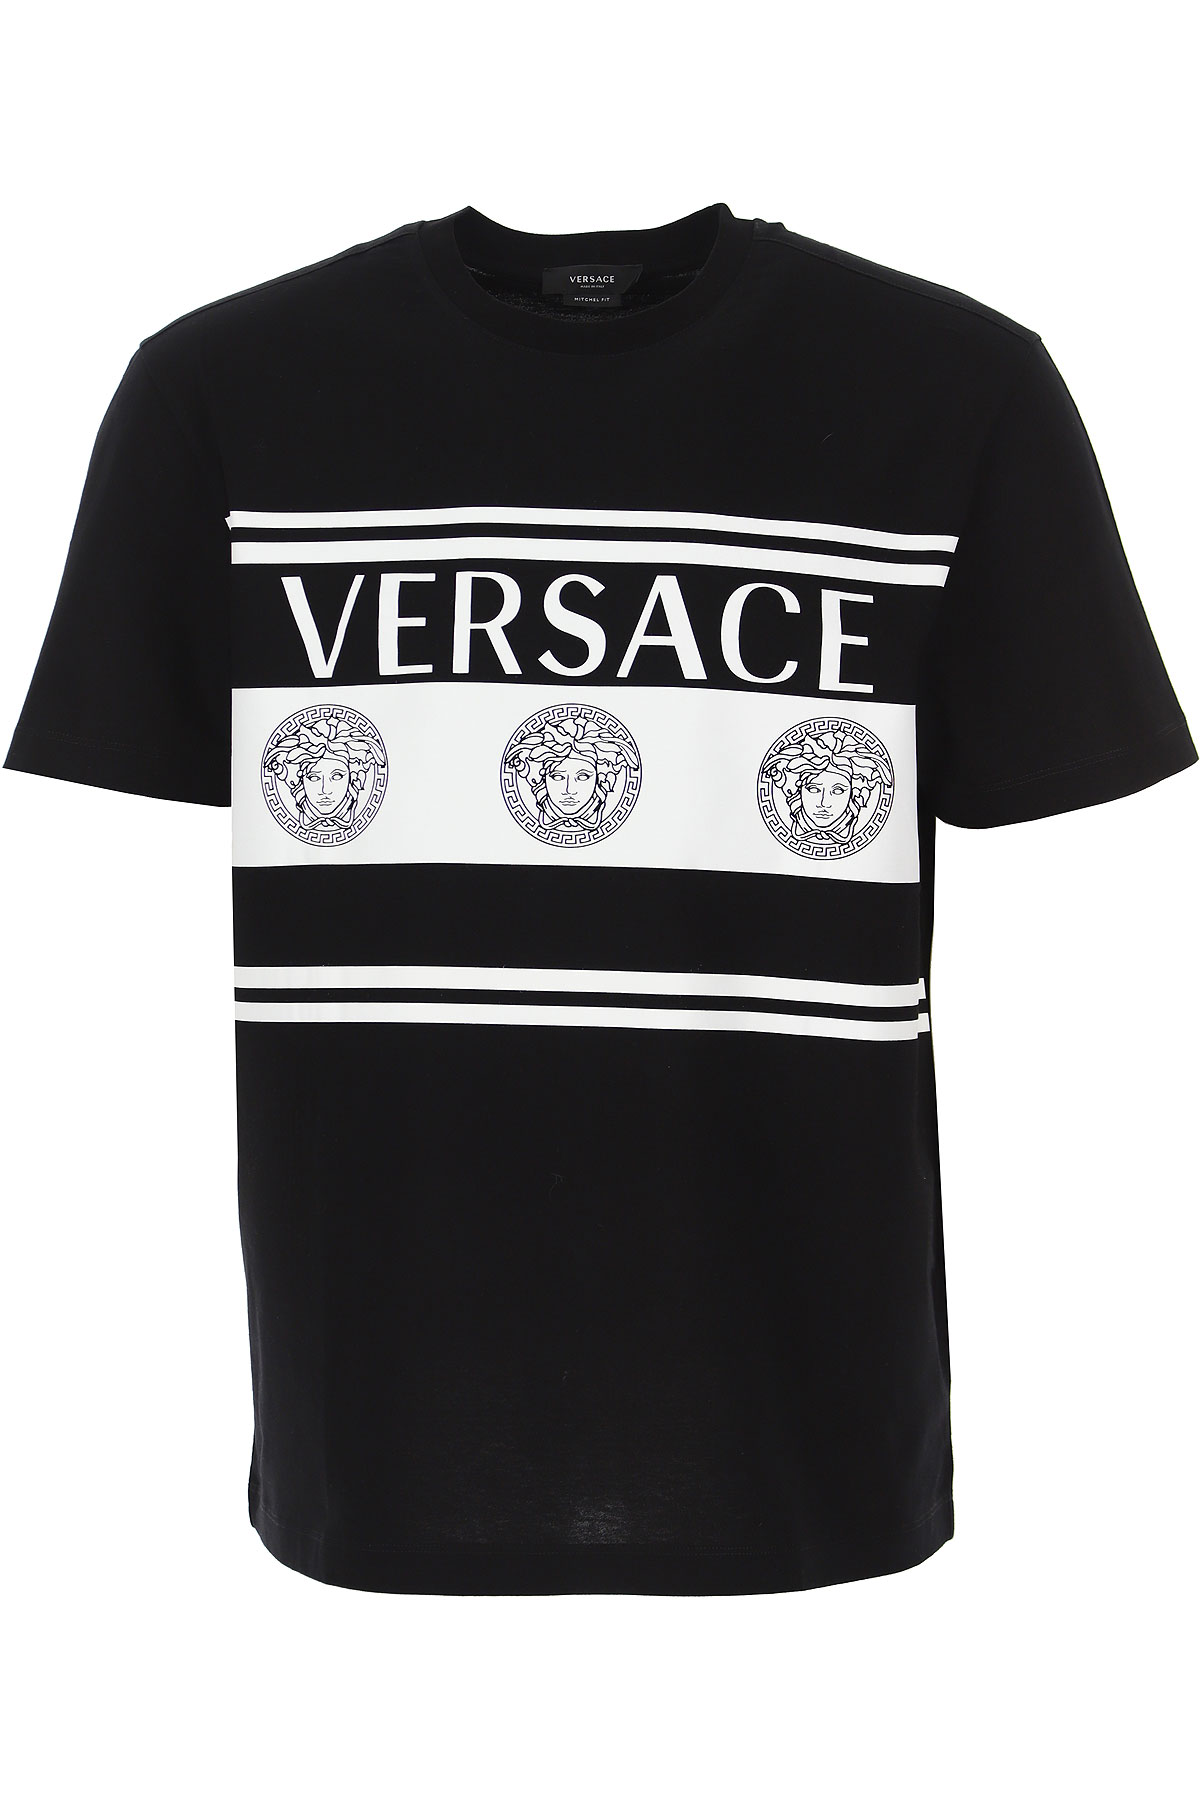 cheap versace t shirt